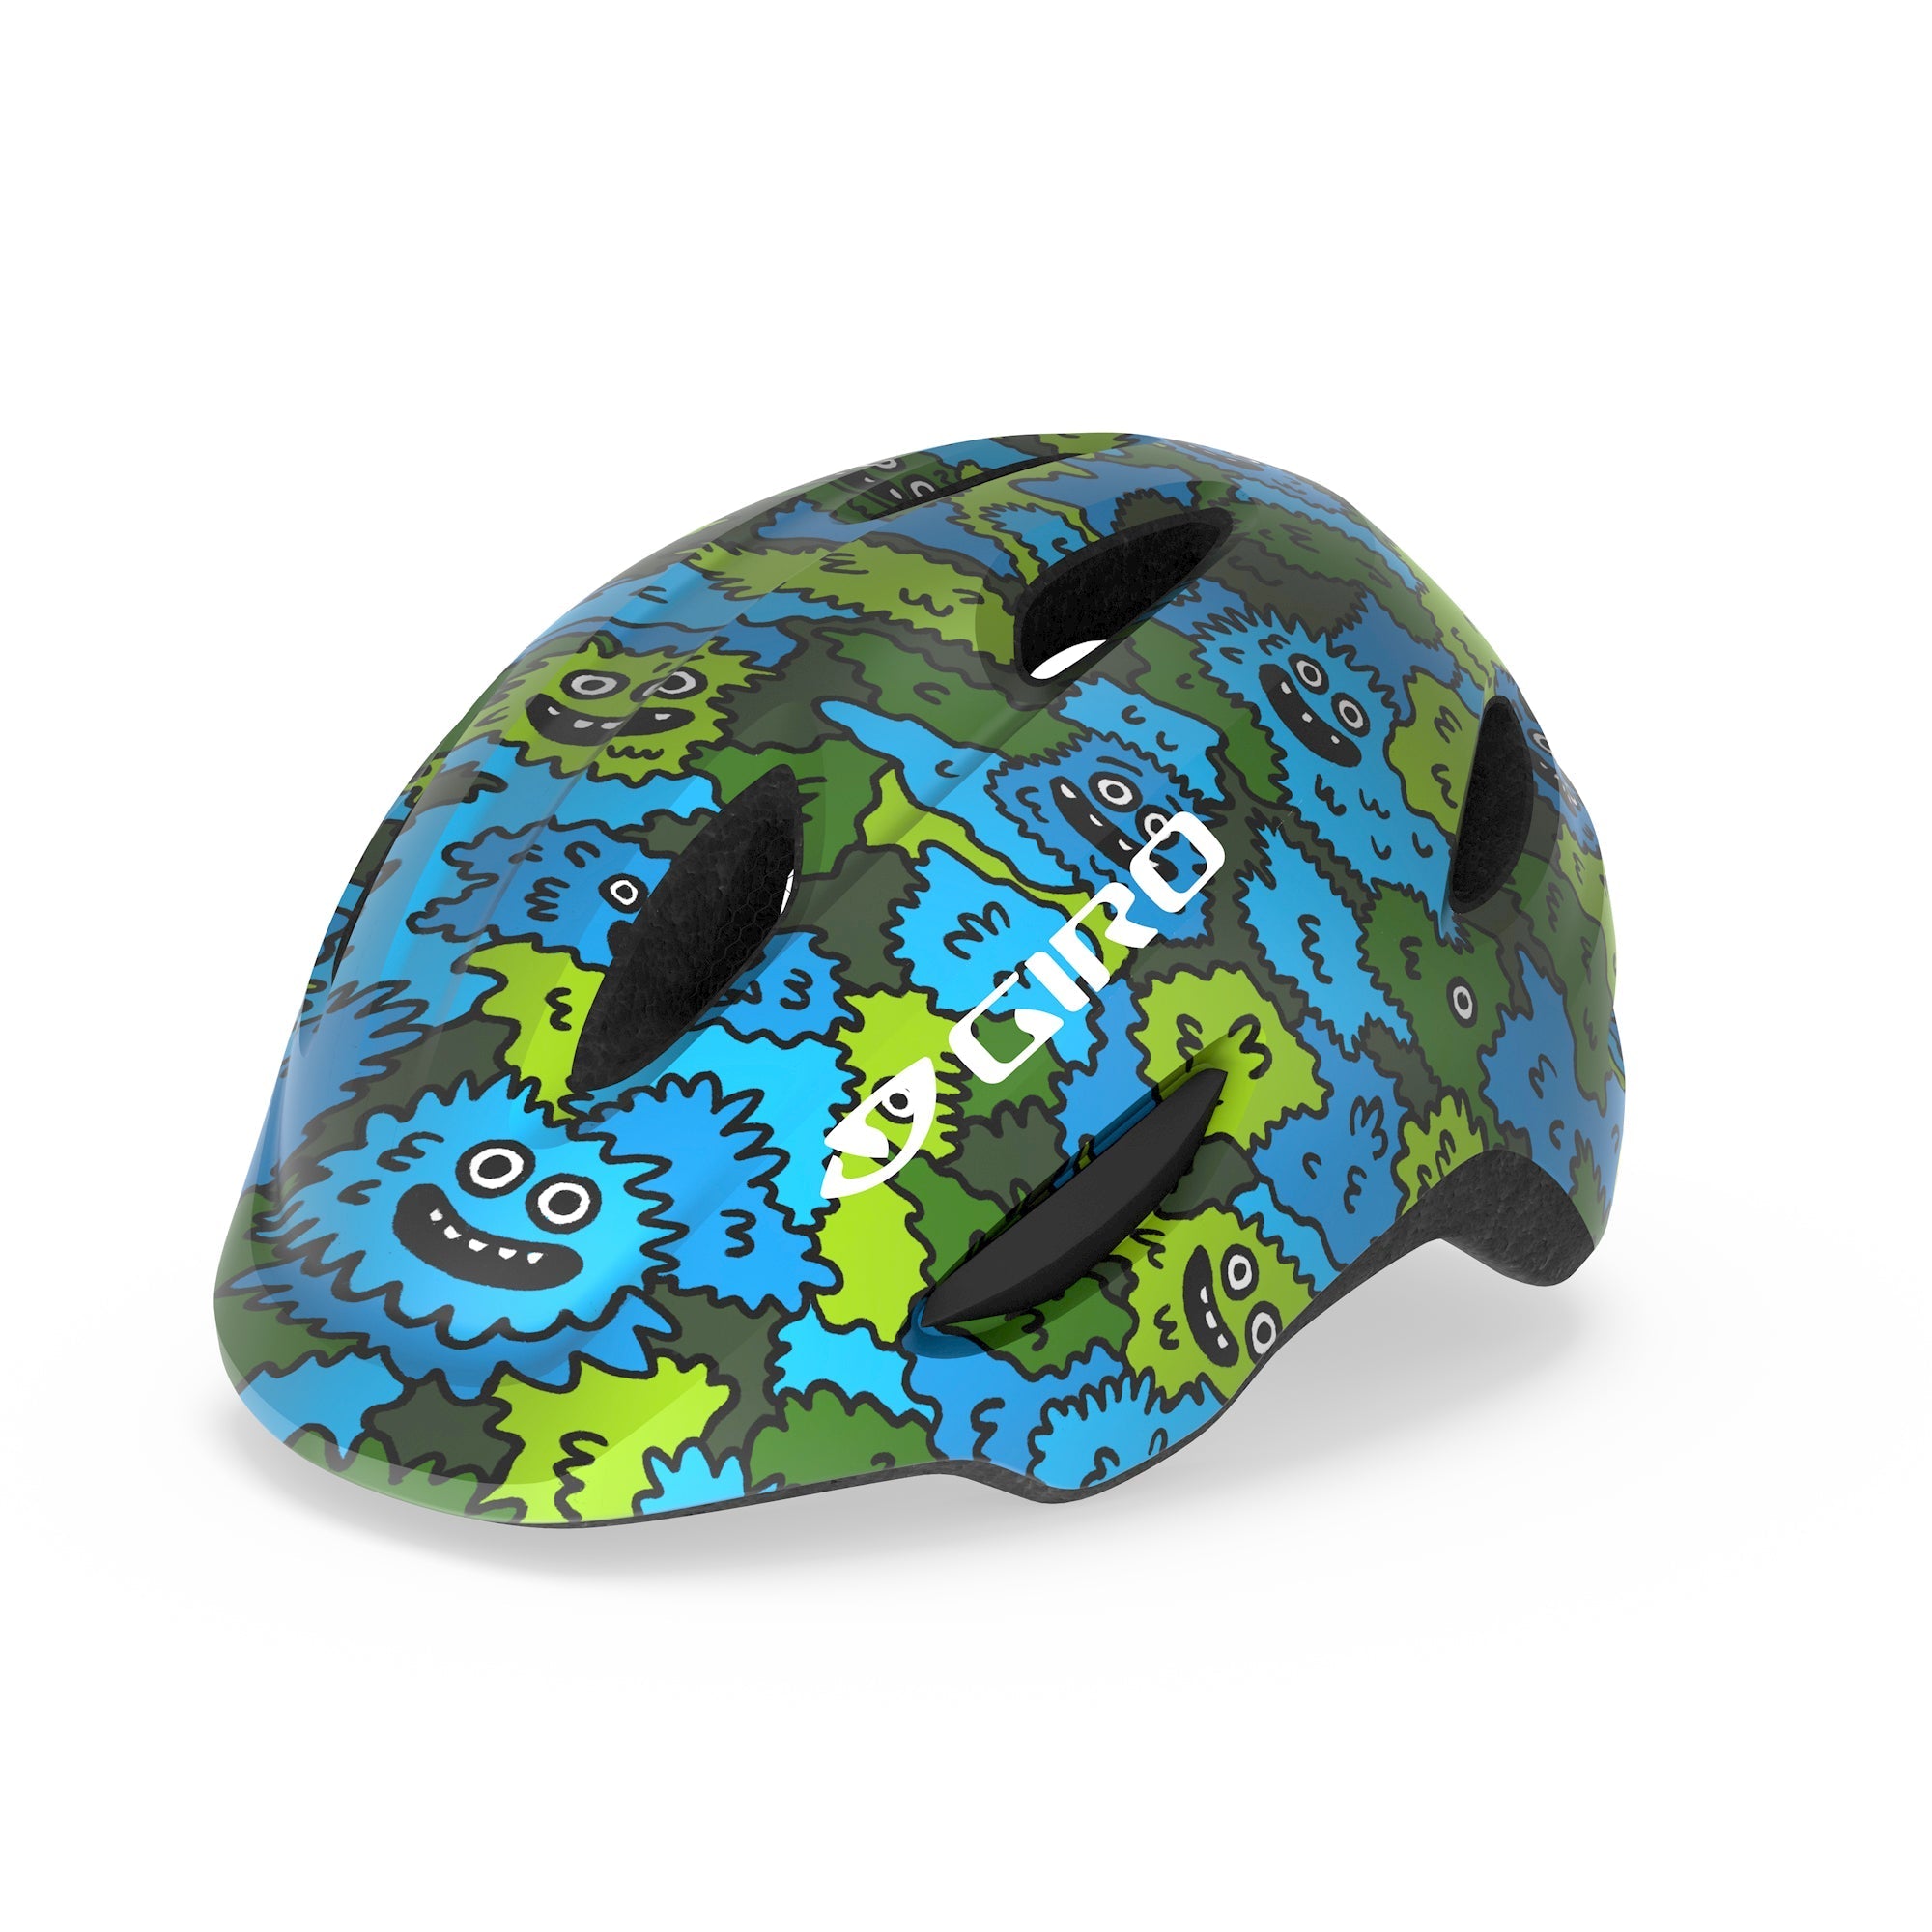 GIRO SCAMP MIPS EU 小童頭盔